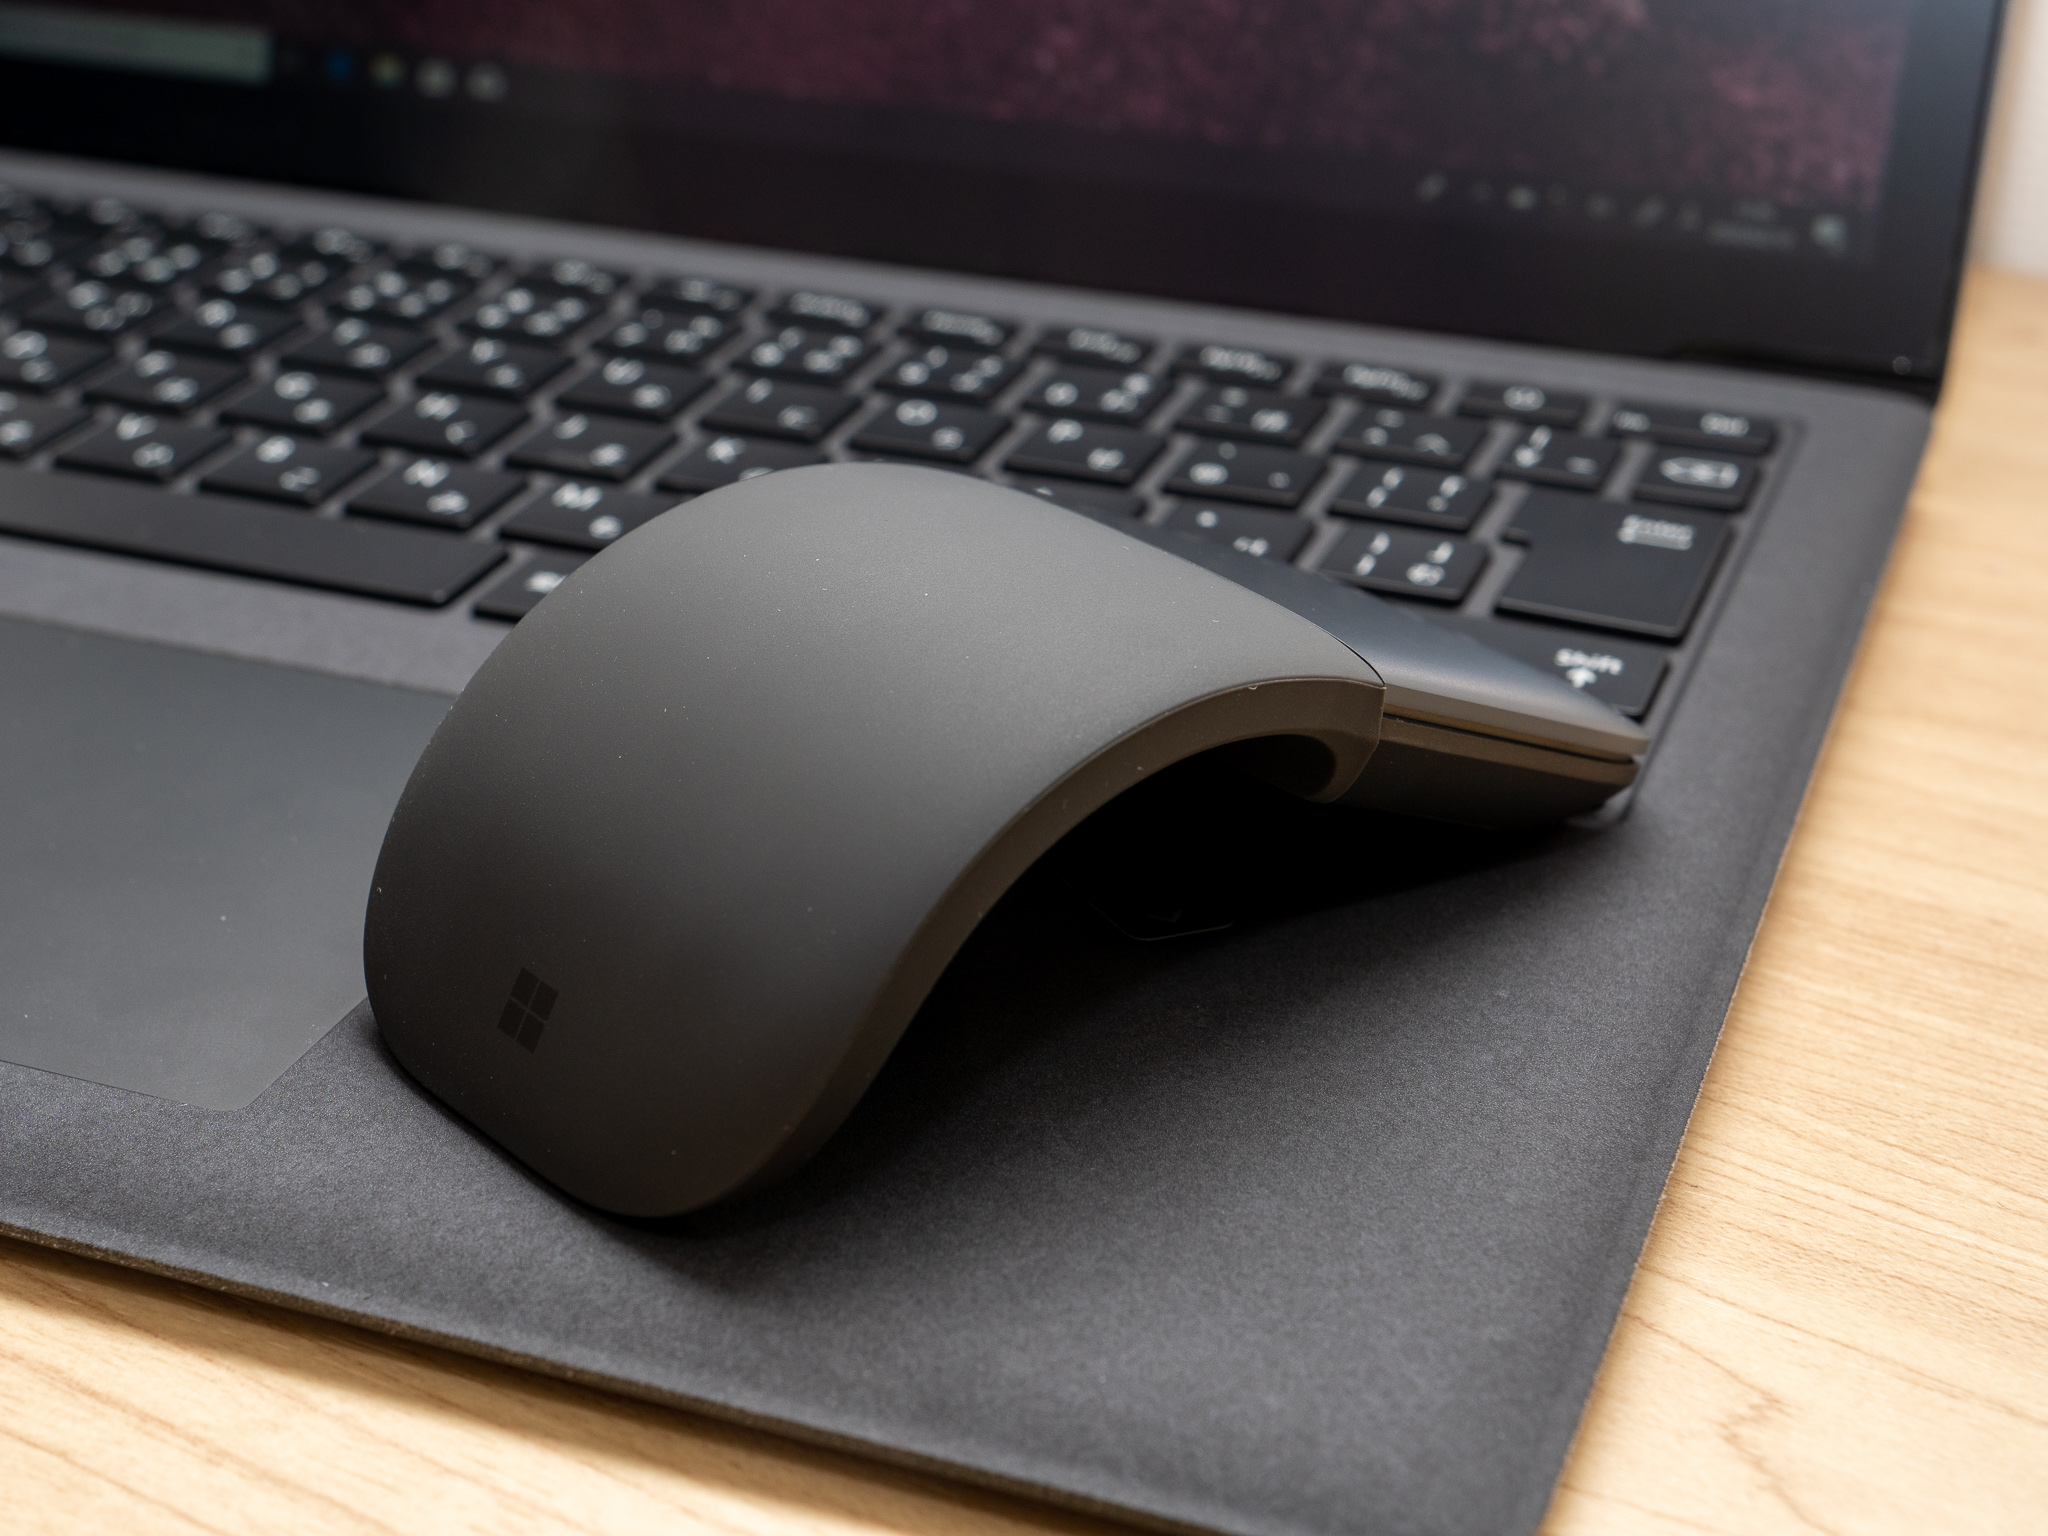 レビュー】Surfaceシリーズに最適なMicrosoft純正マウス「Microsoft